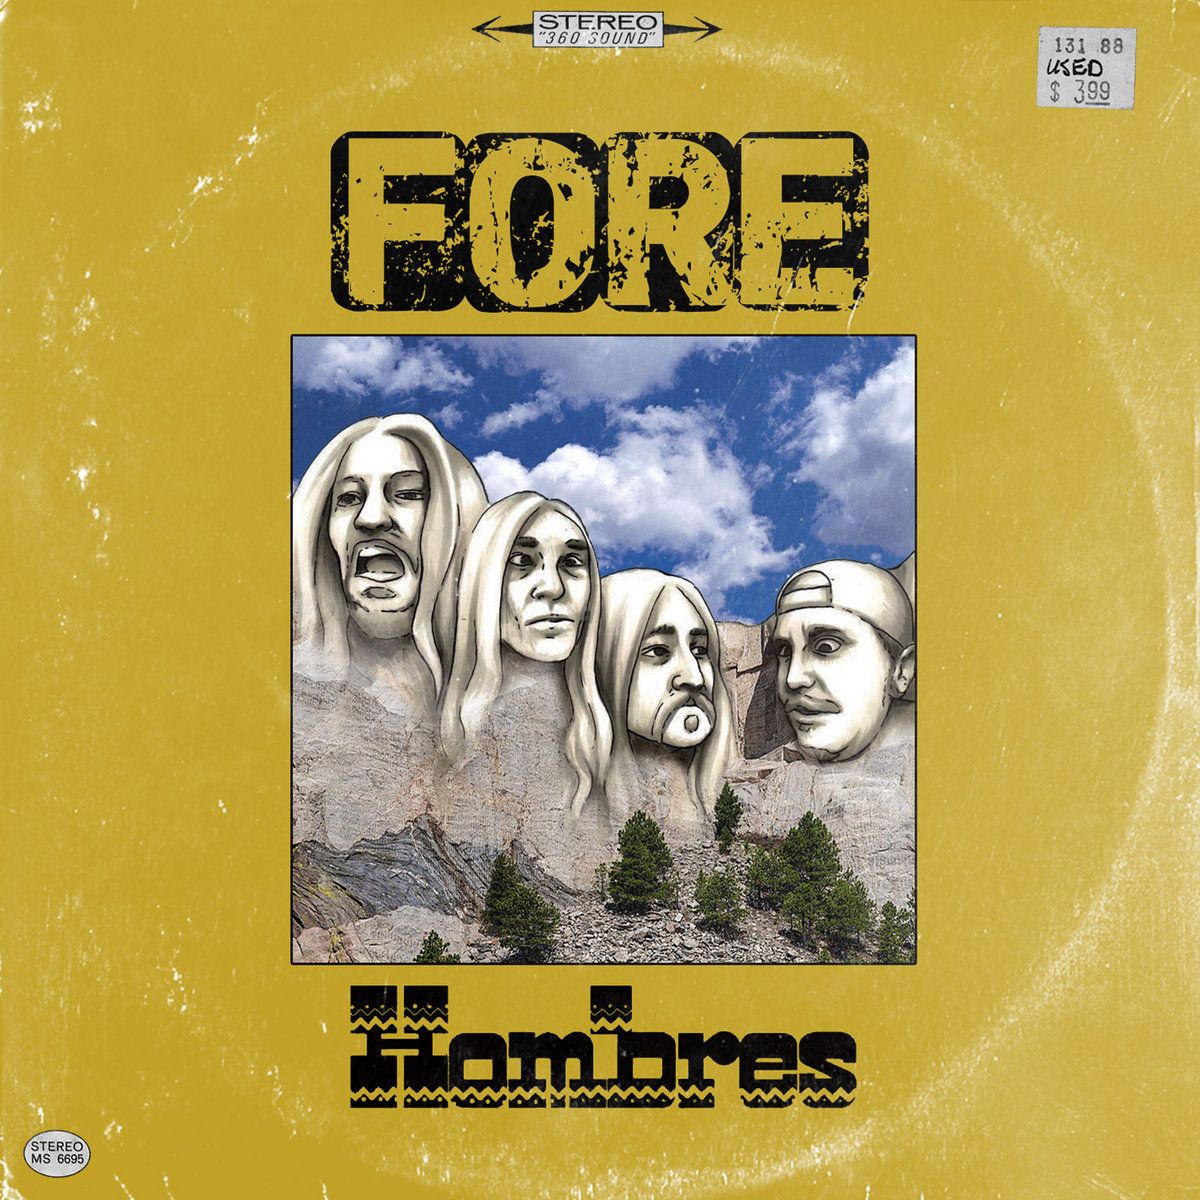 "Hombres" erscheint am 9. Februar auf Vinyl